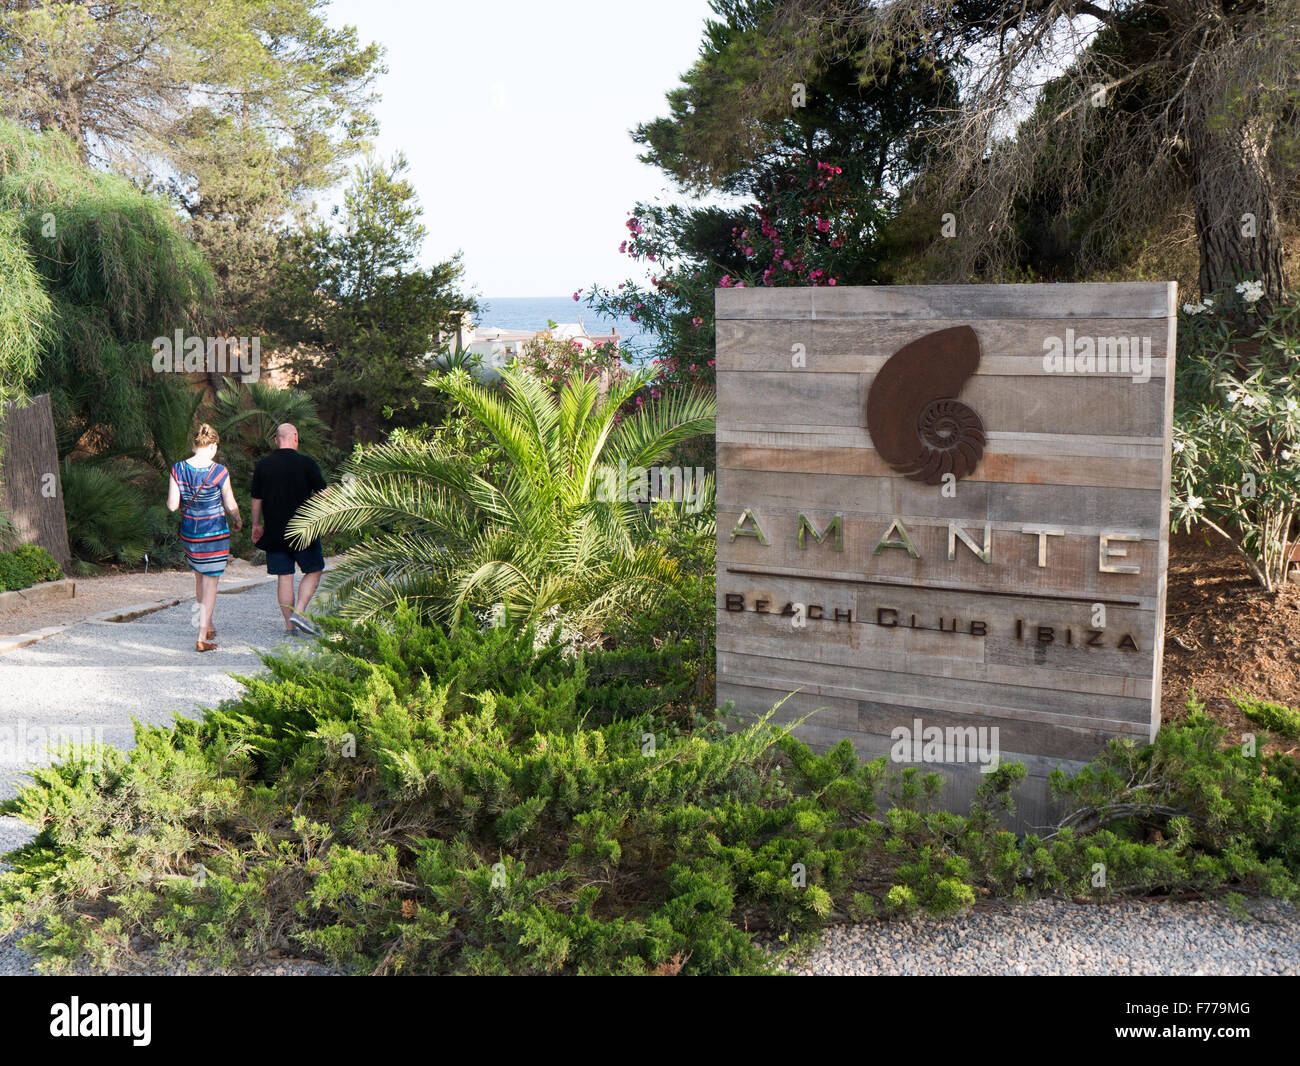 Amante Beach Club auf Ibiza Stockfoto